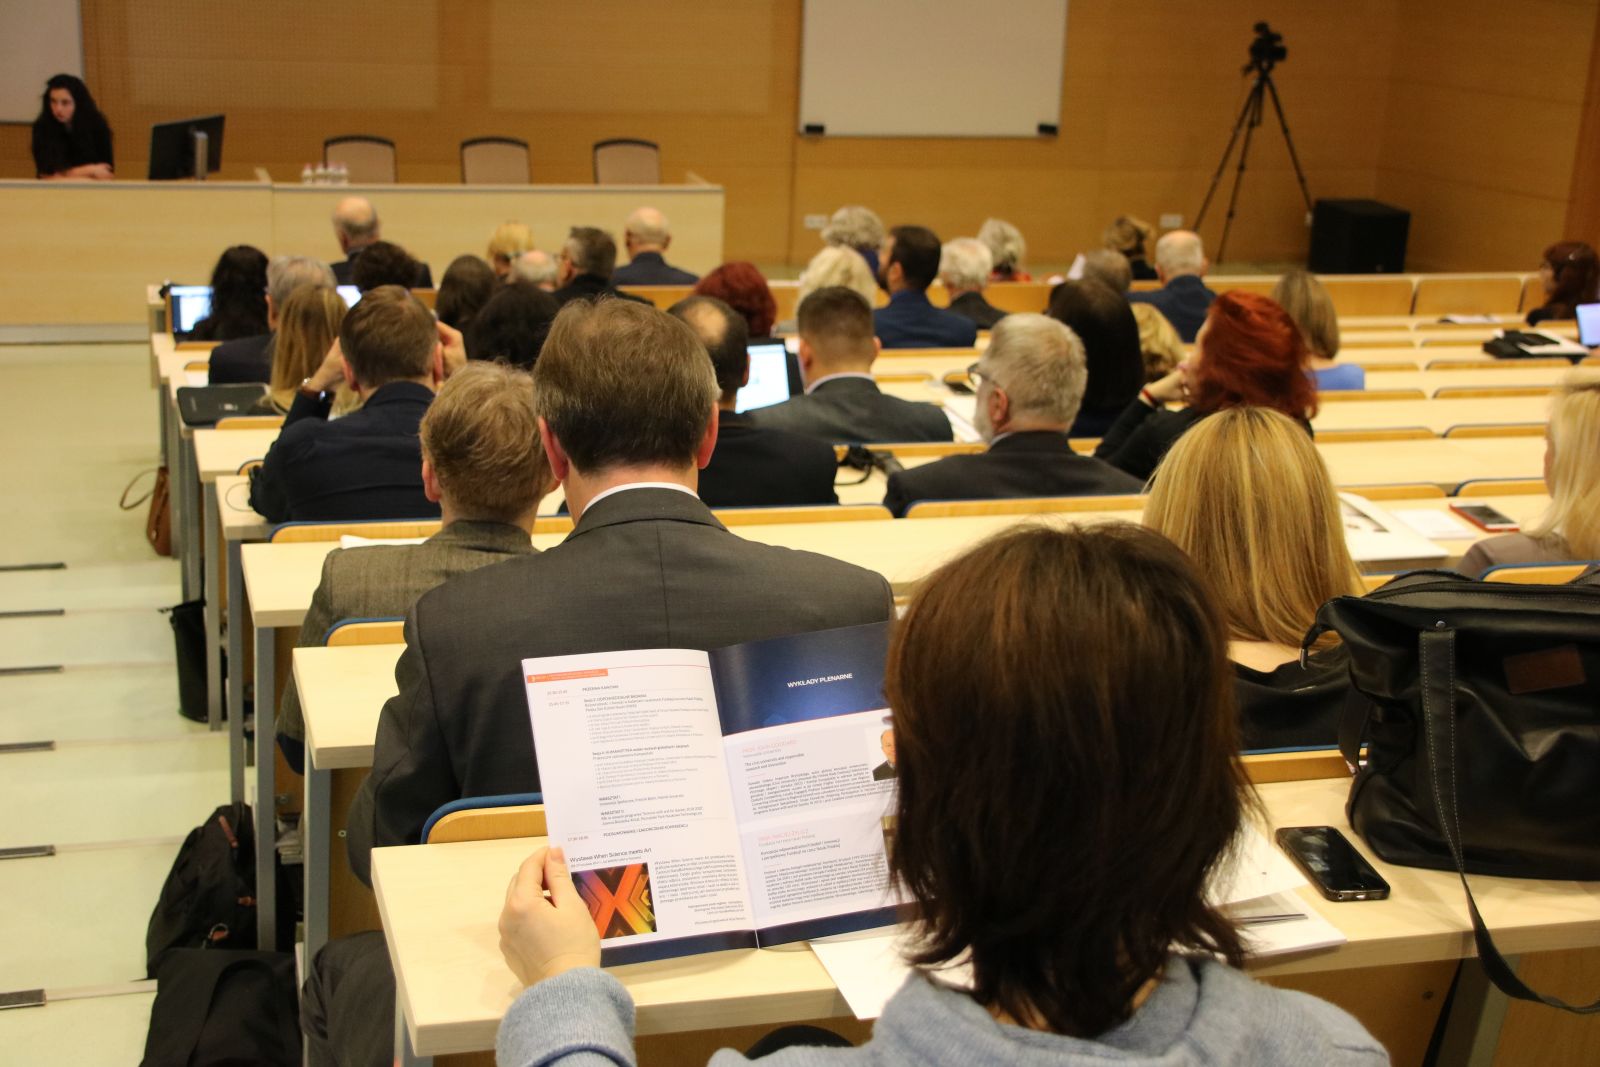 Konferencja Odpowiedzialne Badania i Innowacje – nauka dla społeczeństwa i gospodarki